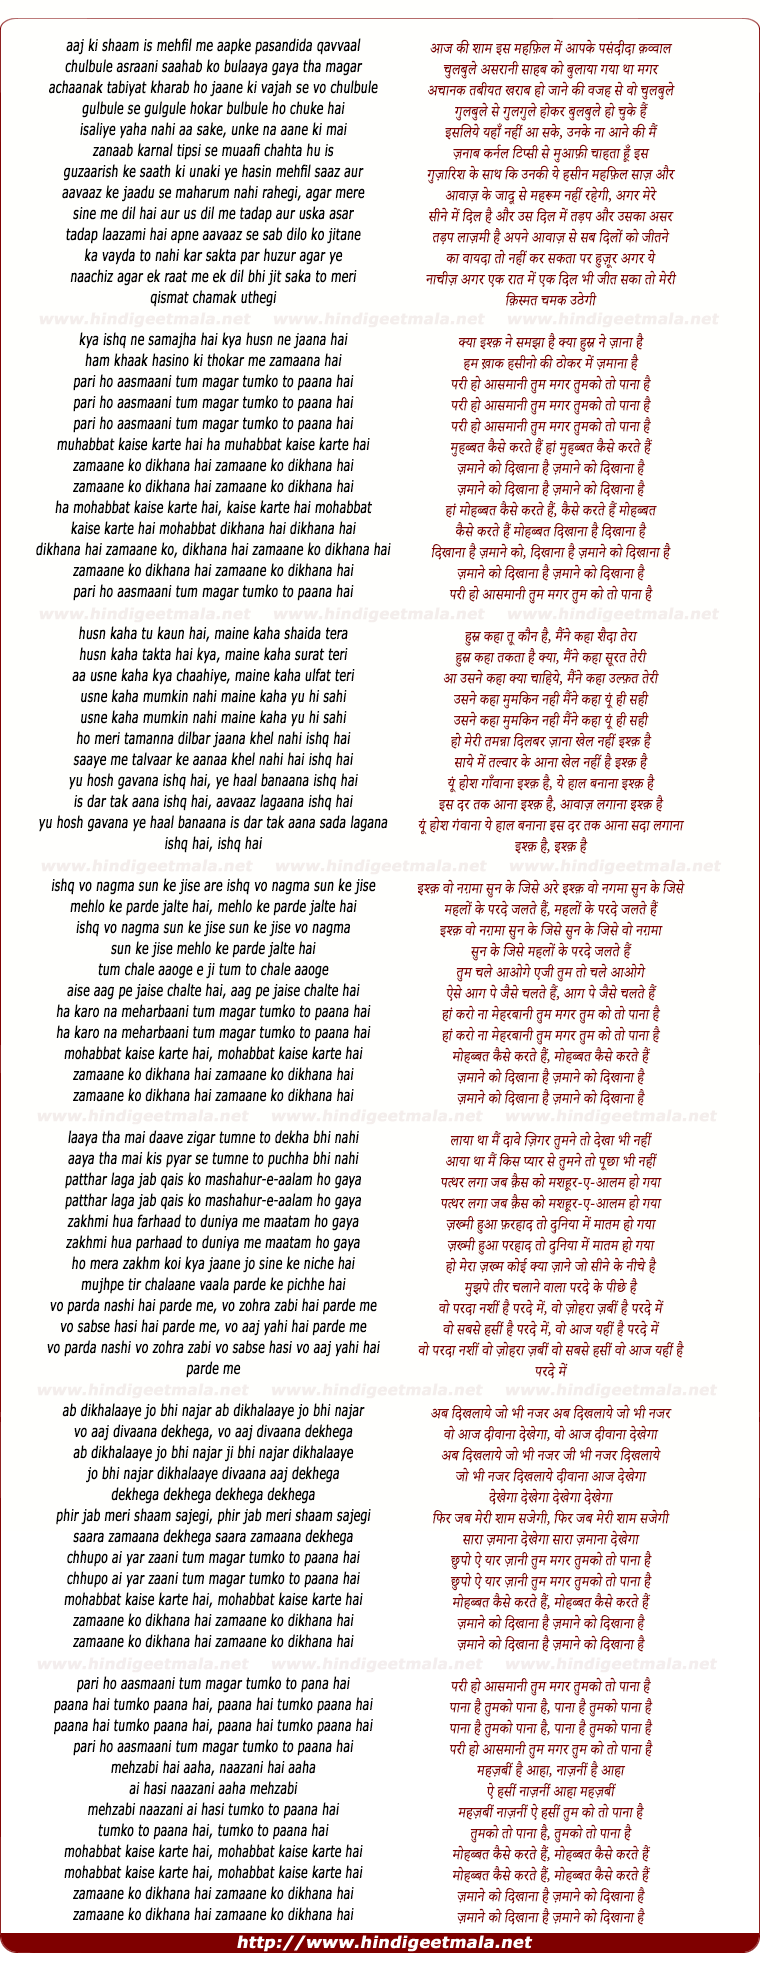 lyrics of song Kya Ishq Ne Samjha Hai Zamane Ko Dikhana Hai